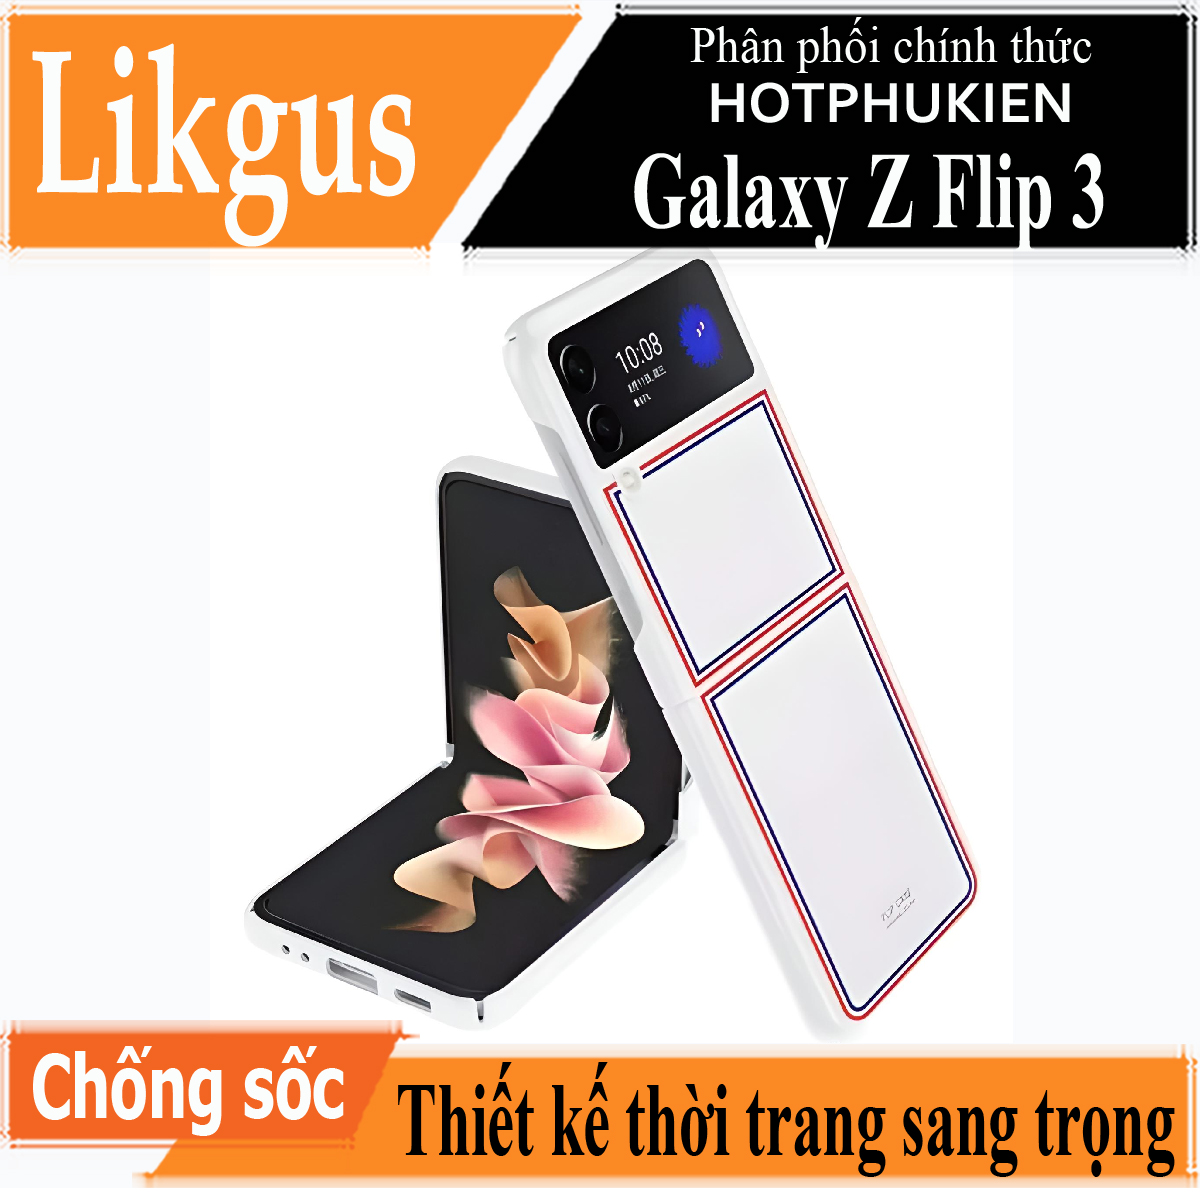 Ốp lưng chống sốc cho Samsung Galaxy Z Flip 3 hiệu Likgus Browne Luxury